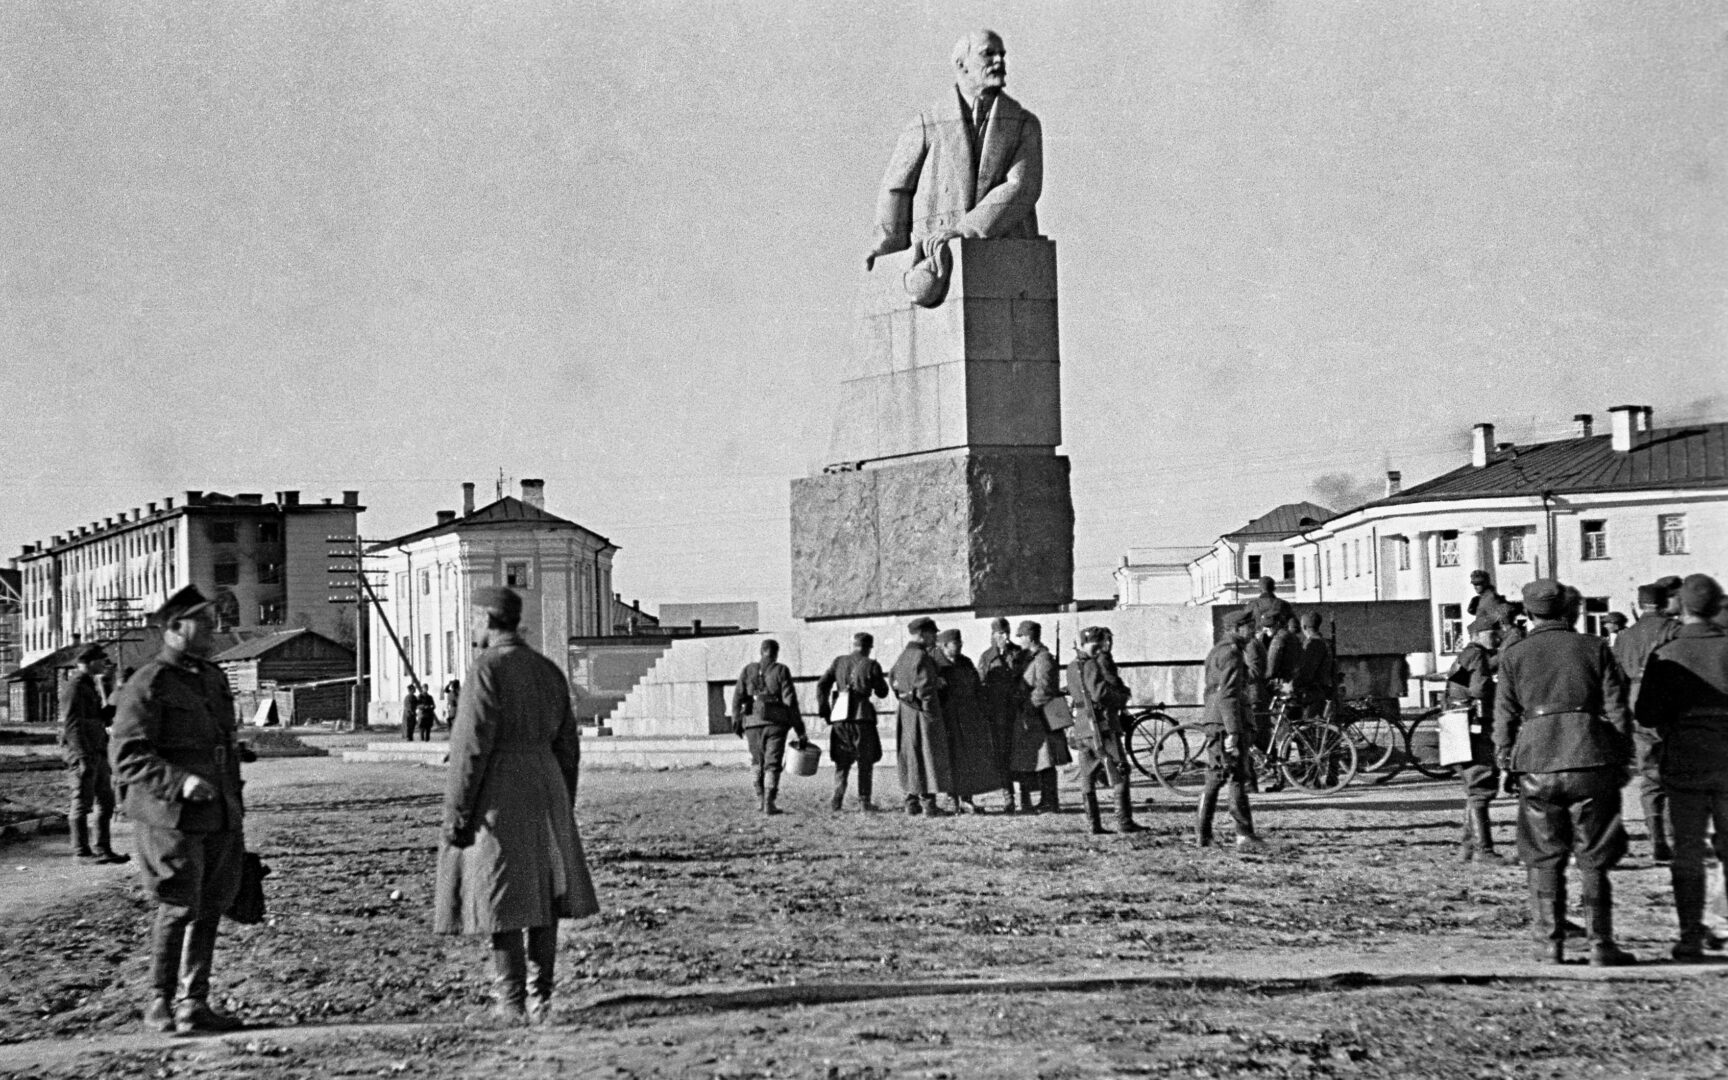 Lenin sai väistyä Äänislinnassa kenttätykin tieltä. Muutoinkin suomalaiset ”merkkasivat” uuden kaupunkinsa. Suomalaisten käyttöön ottamat kasarmirakennukset ovat edelleenkin sotilaskäytössä.